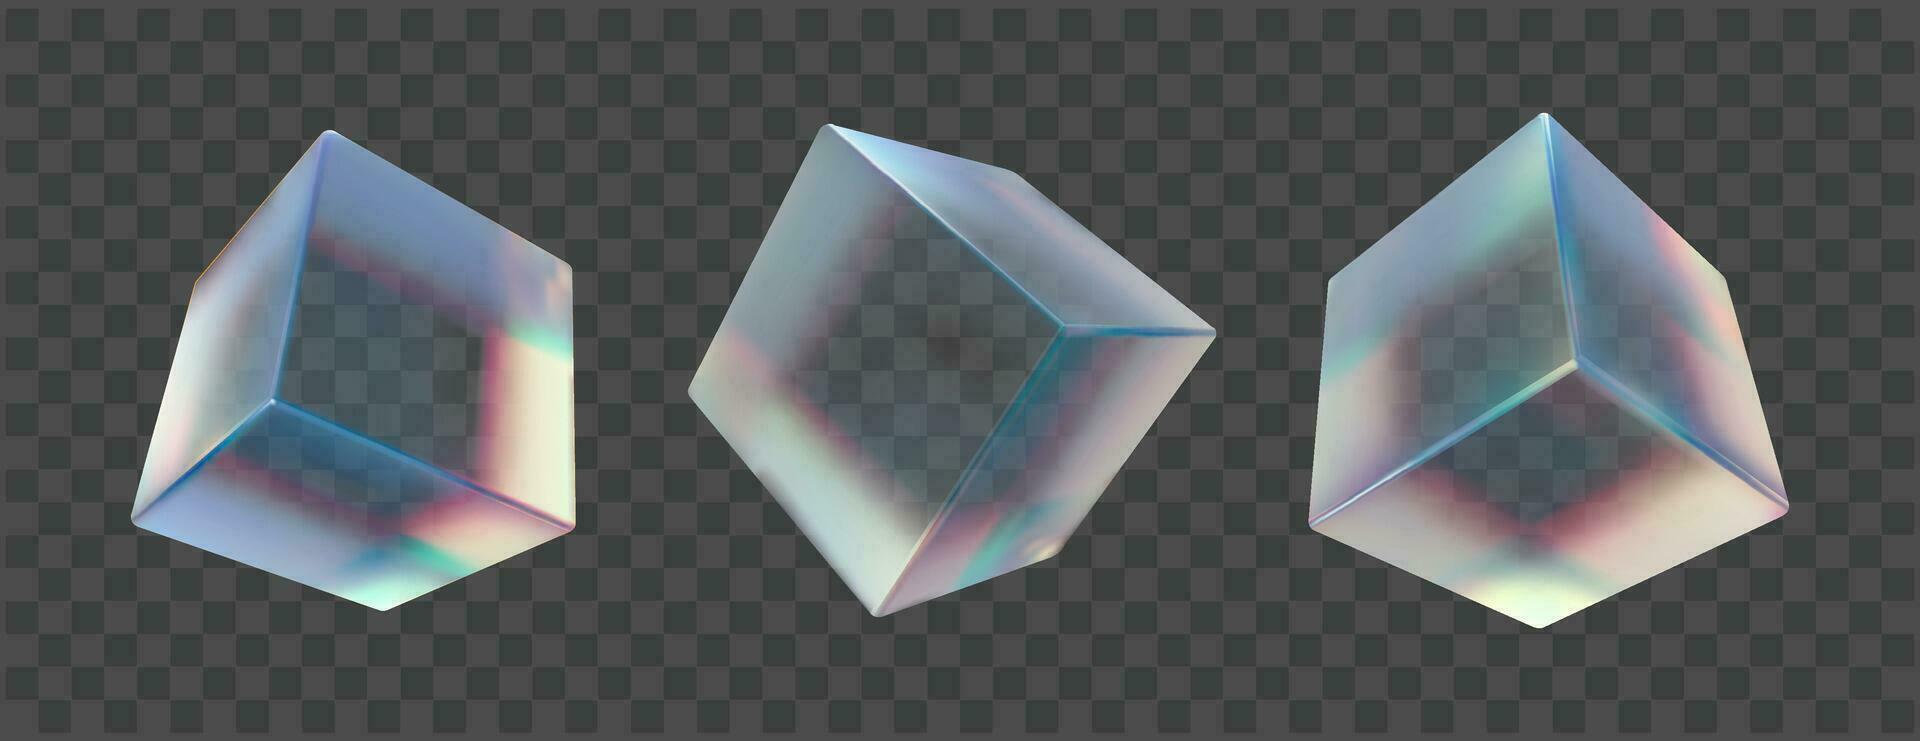 3d transparente vôo cubo caixa com cristal prisma dispersão. abstrato futurista translúcido objeto com luz espectro reflexão e holográfico textura coleção. rude esteira acrílico material. vetor